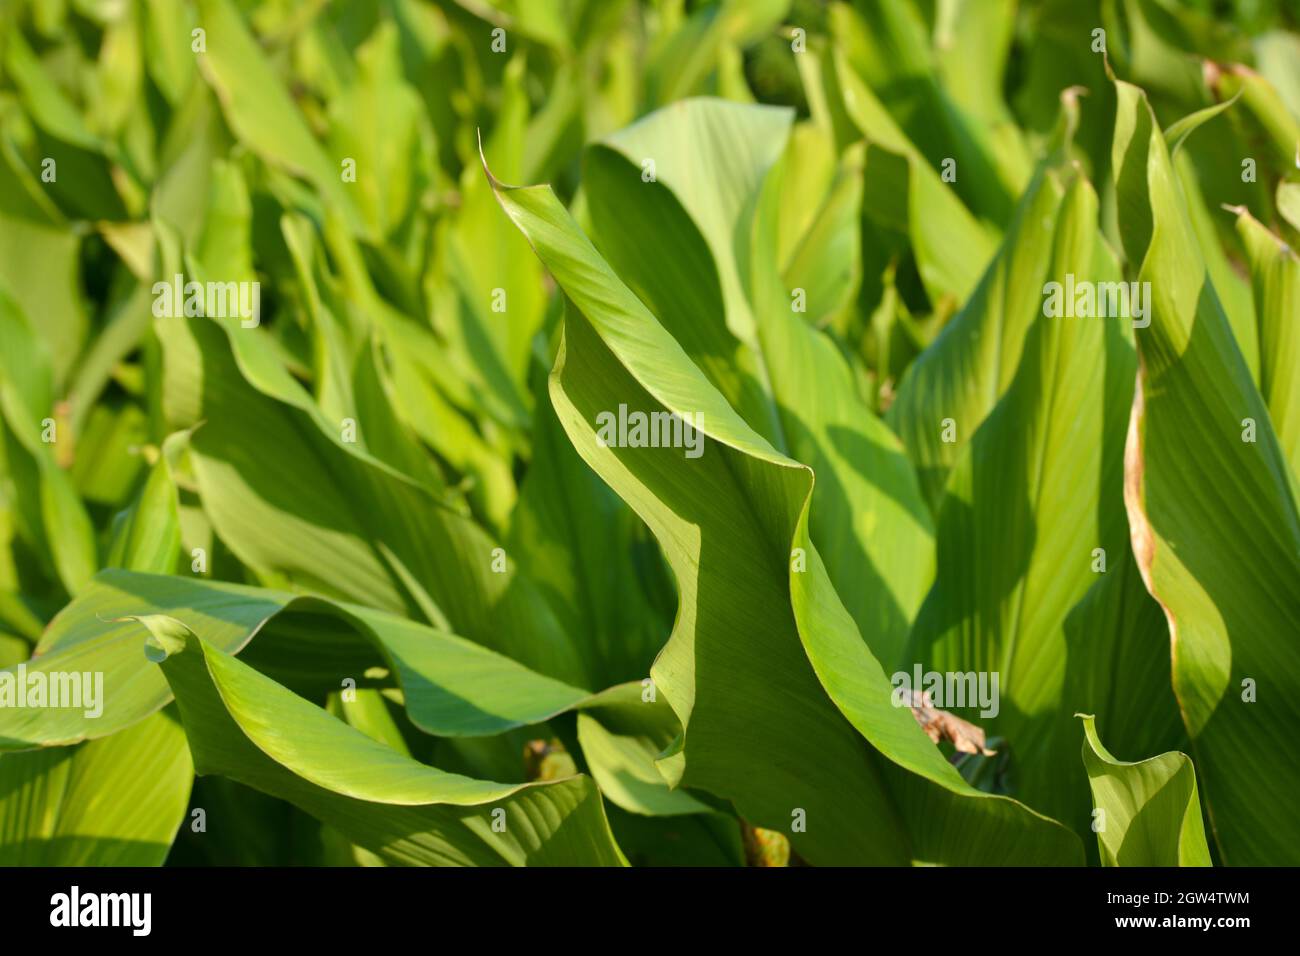 Kurkuma Anbaugebiet in Indien. Kurkuma ist eine blühende Pflanze, Curcuma longa aus der Familie der Ingwer Stockfoto